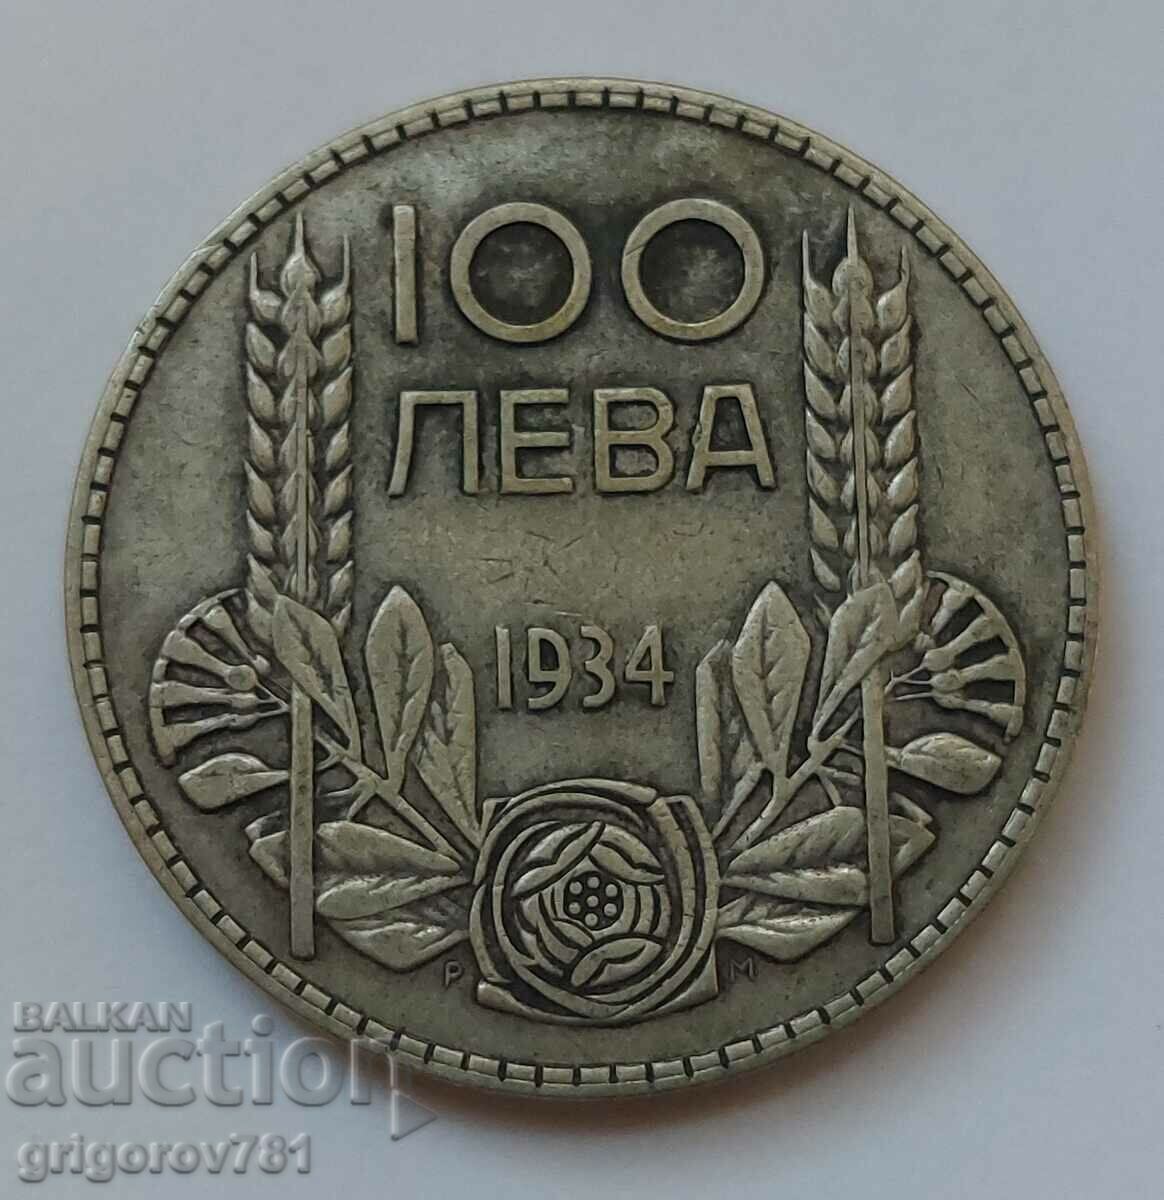 Ασήμι 100 λέβα Βουλγαρία 1934 - ασημένιο νόμισμα #103